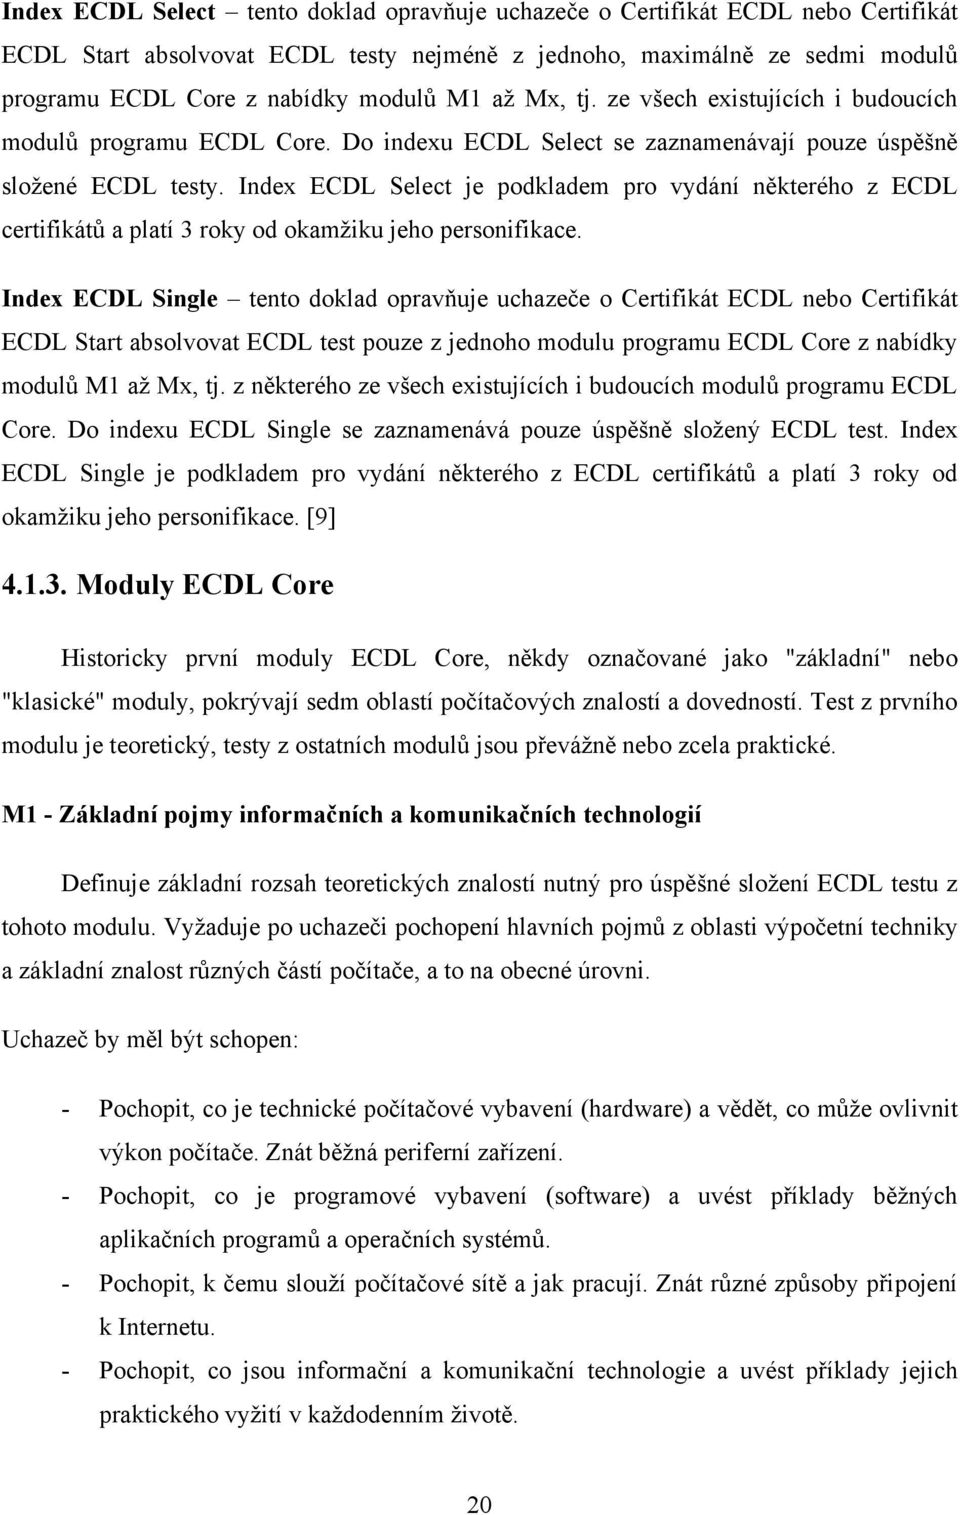 Index ECDL Select je podkladem pro vydání některého z ECDL certifikátů a platí 3 roky od okamţiku jeho personifikace.